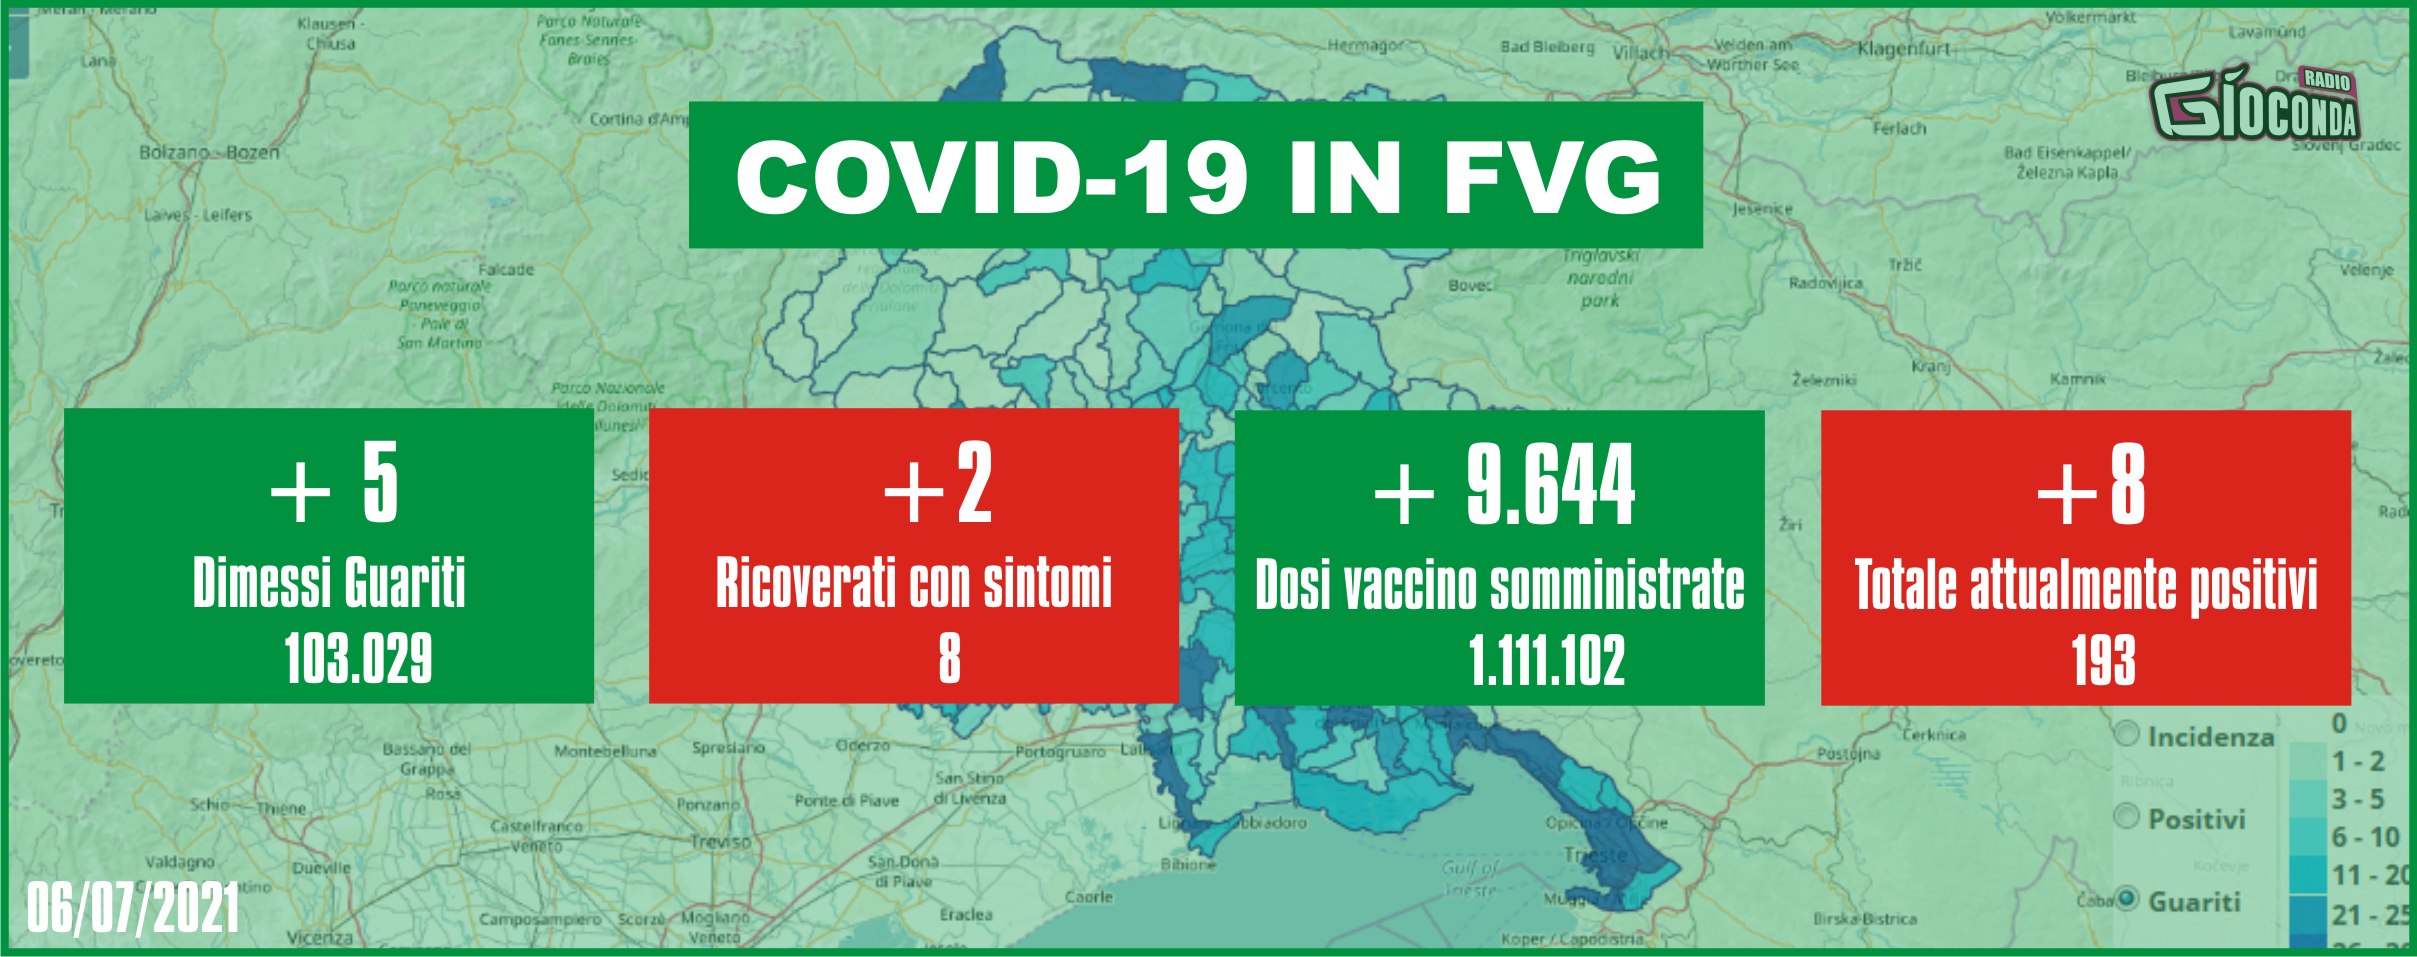 6 luglio 2021 - Aggiornamento casi Covid-19 Dati aggregati quotidiani FRIULI VENEZIA GIULIA